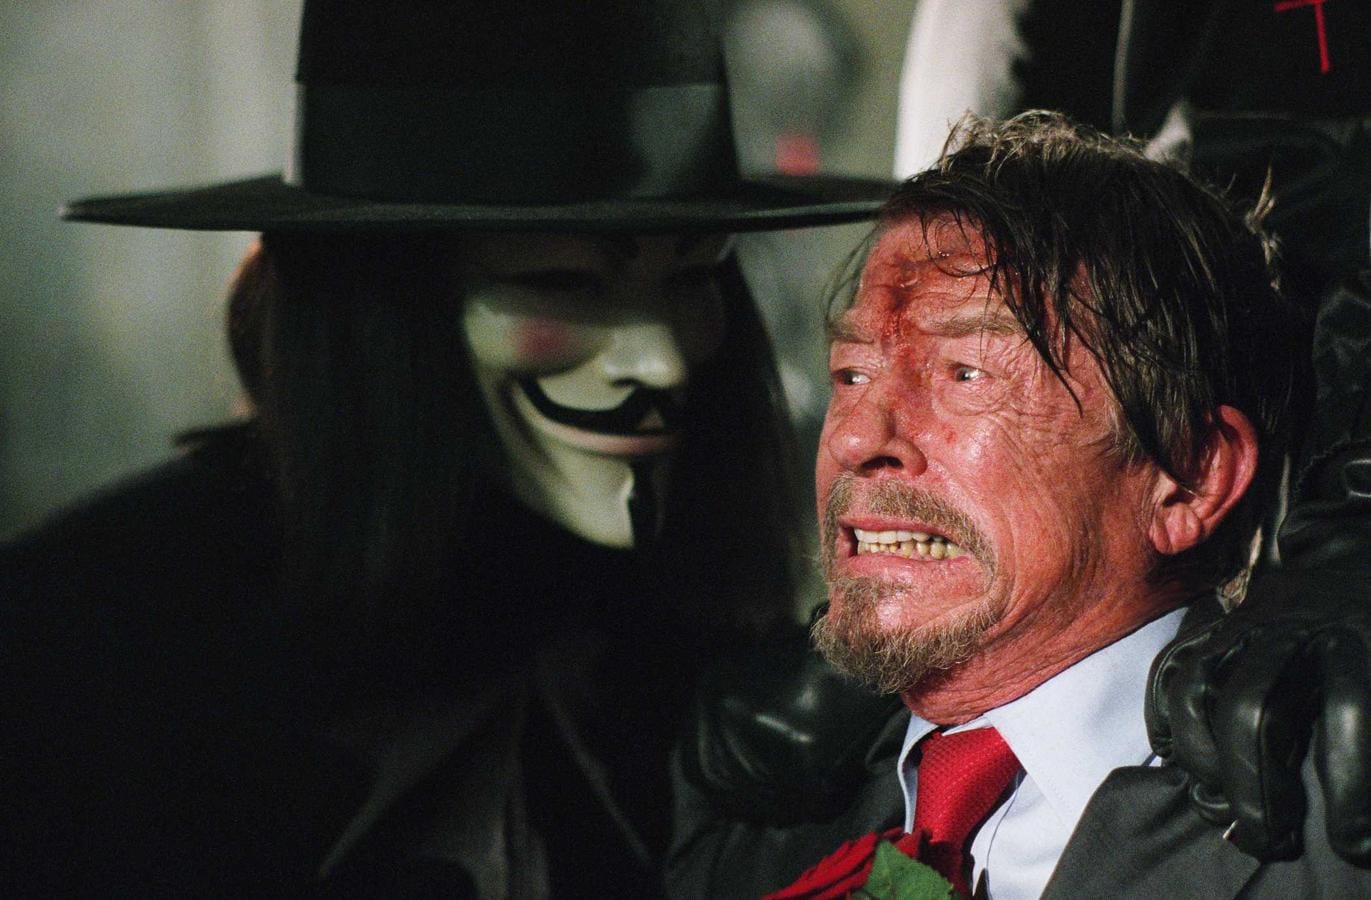 Junto a Natalie Portman, Hugo Weaving y Stephen Rea, John Hurt participó en «V de Vendetta» (2006). Una película dirigida por James McTeigue, con guion de los hermanos Wachowski, que estaba ambientada en un futuro no muy lejano en una Gran Bretaña totalitaria. Hurt interpretaba a dictador